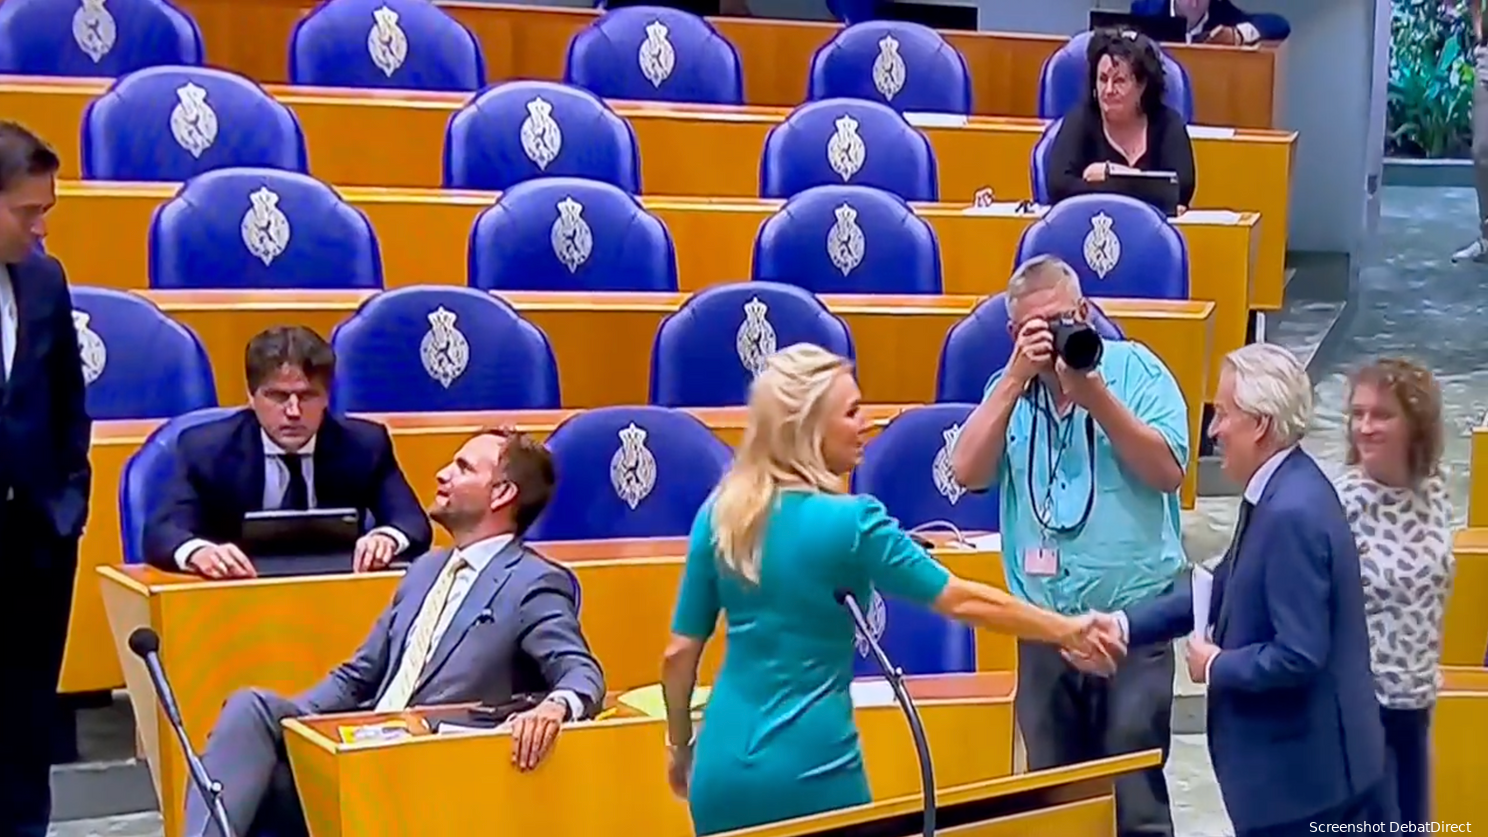 "Kleutergedrag!" "Pure minachting!" Rutte (VVD), Paternotte (D66), Hermans (VVD), Kuiken (PvdA) weigeren Ralf Dekker (FVD) hand te schudden na zijn maidenspeech